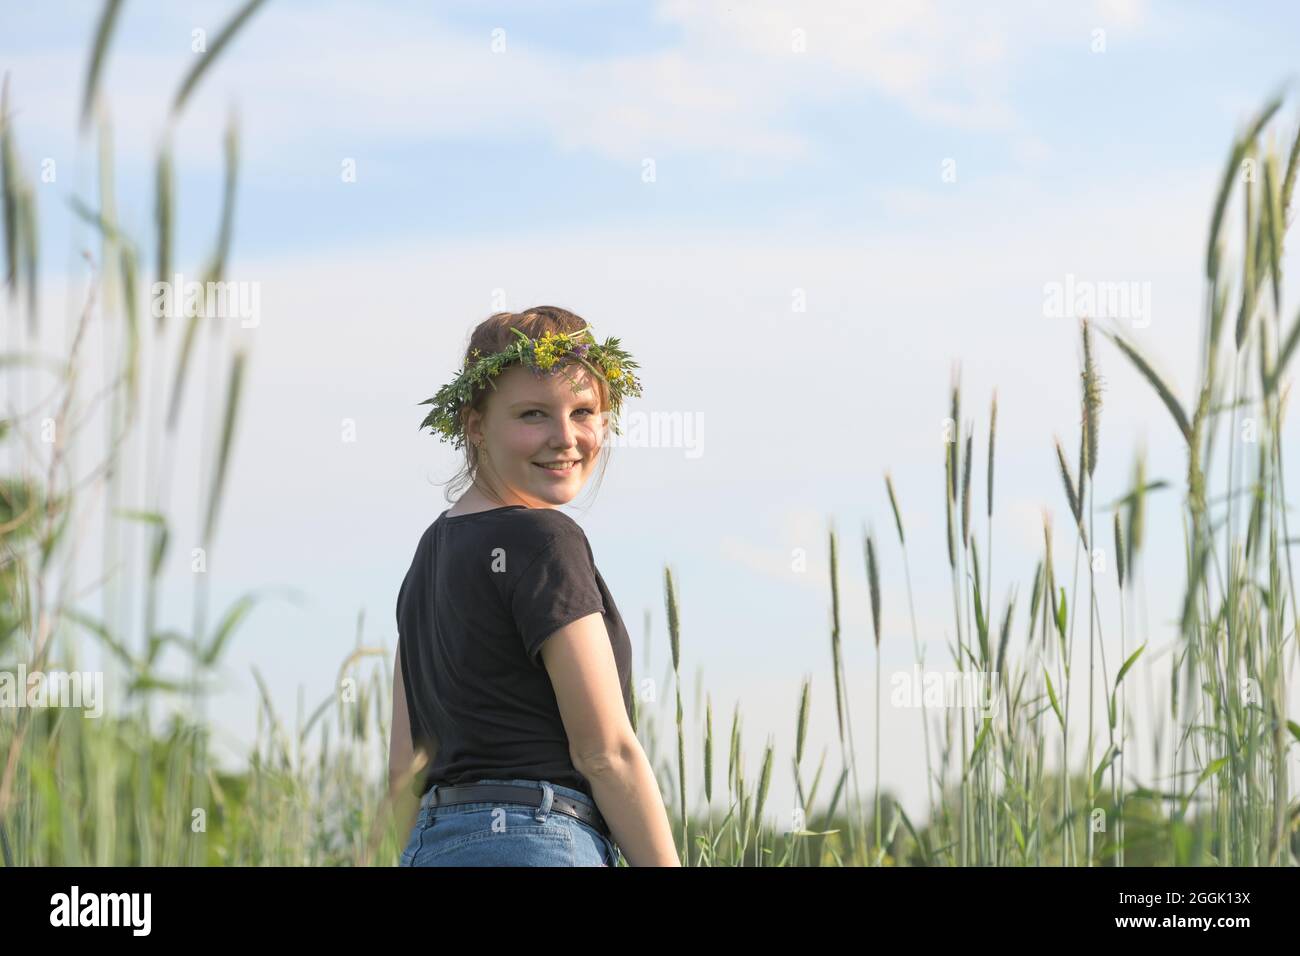 Die junge Frau mit einem Kranz aus natürlichen Blumen auf ihrem Kopf läuft lebhaft zwischen Getreidepflanzen Stockfoto